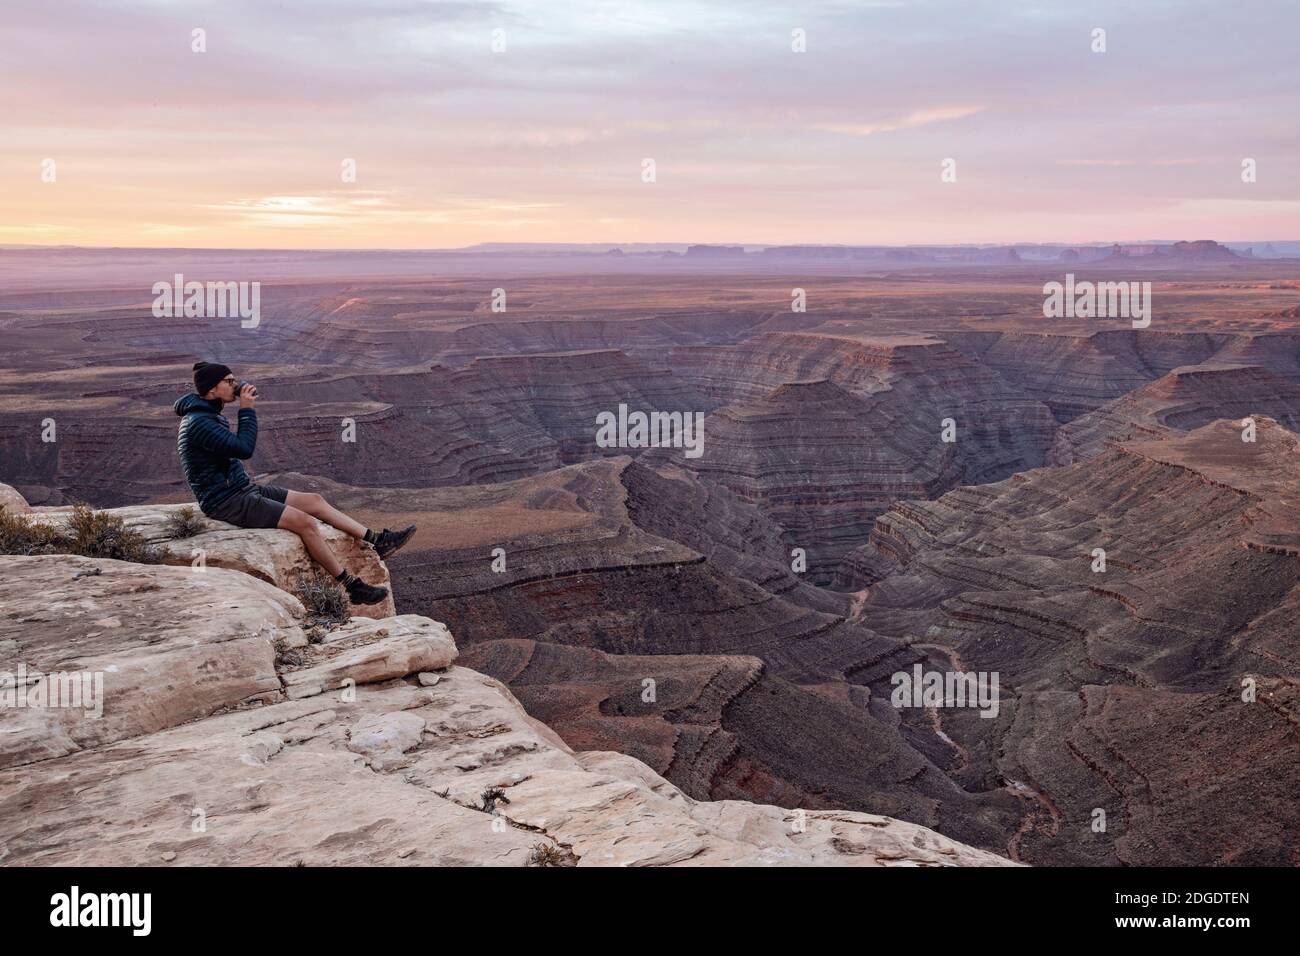 El hombre bebe café sentado en el borde del acantilado, sombrero mexicano, Utah Foto de stock